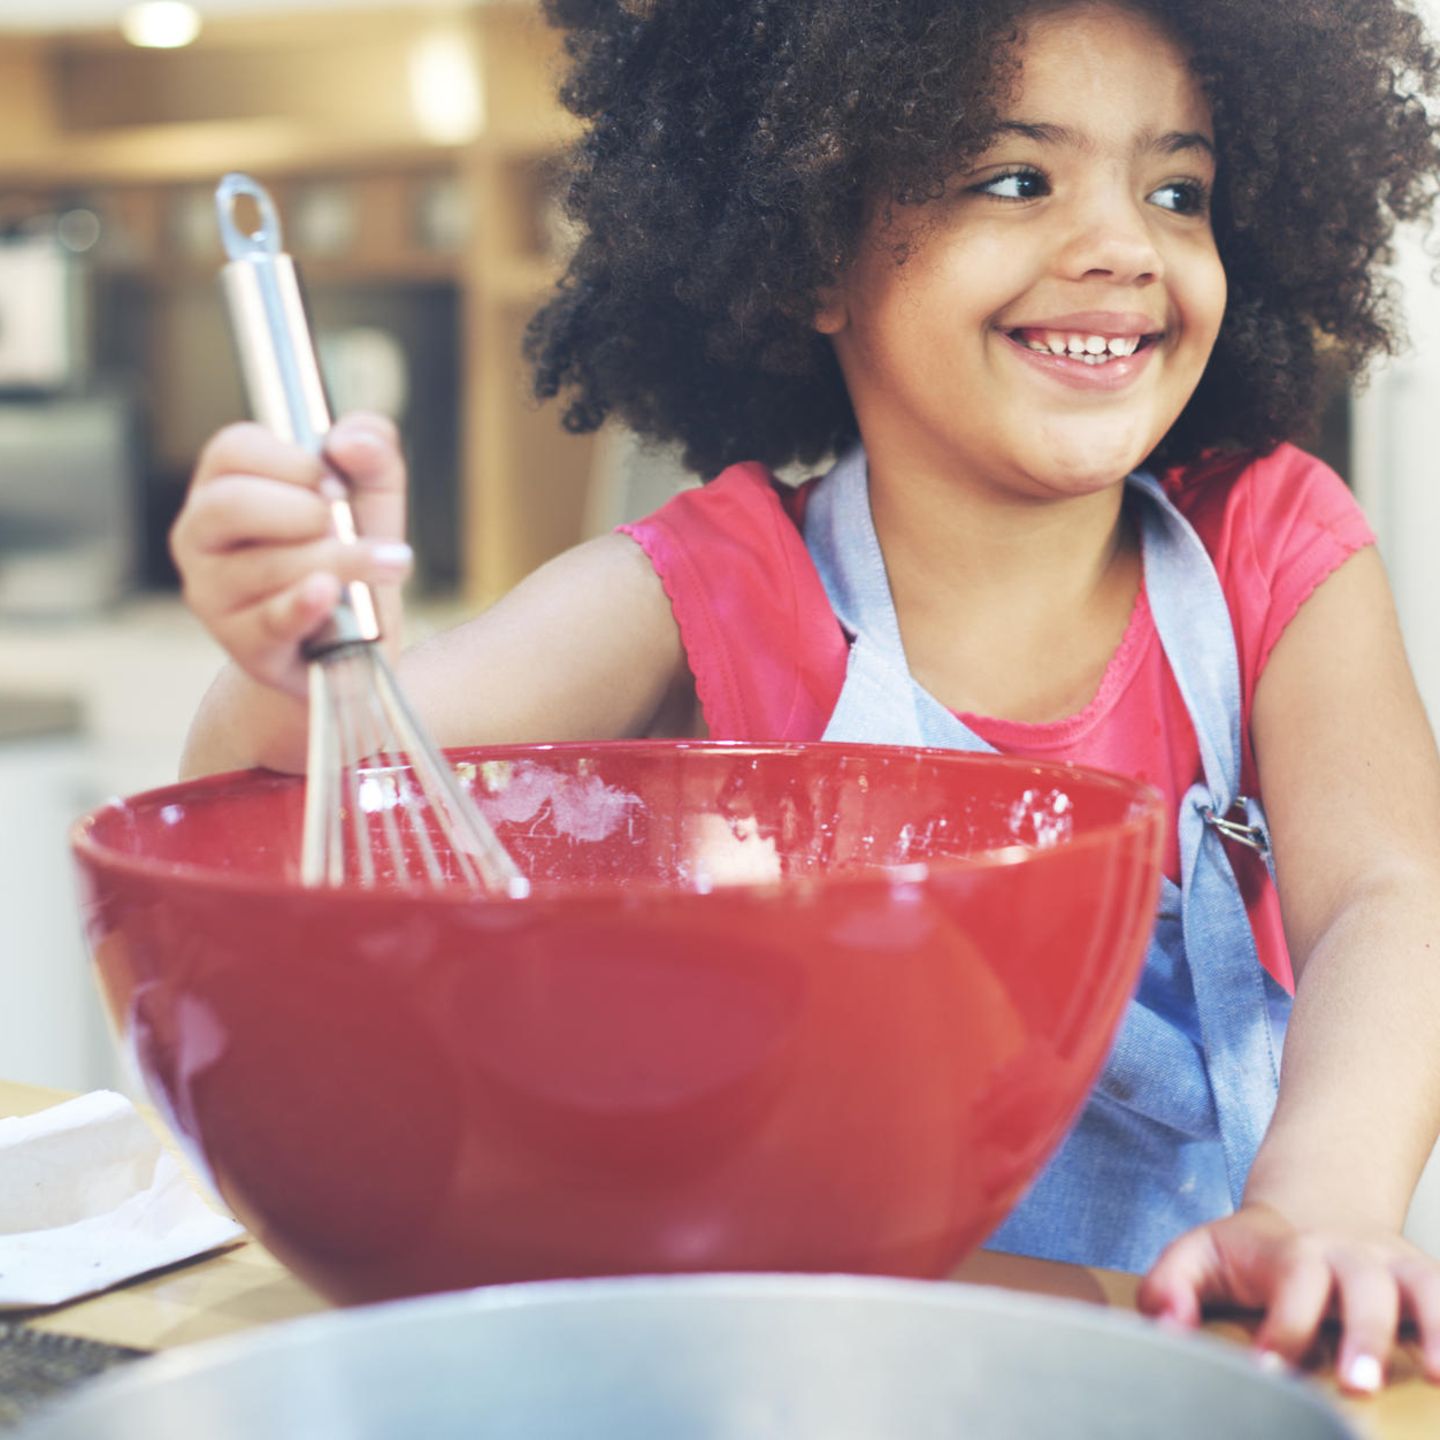 Alltagspannen: Kleines Mädchen in der Küche